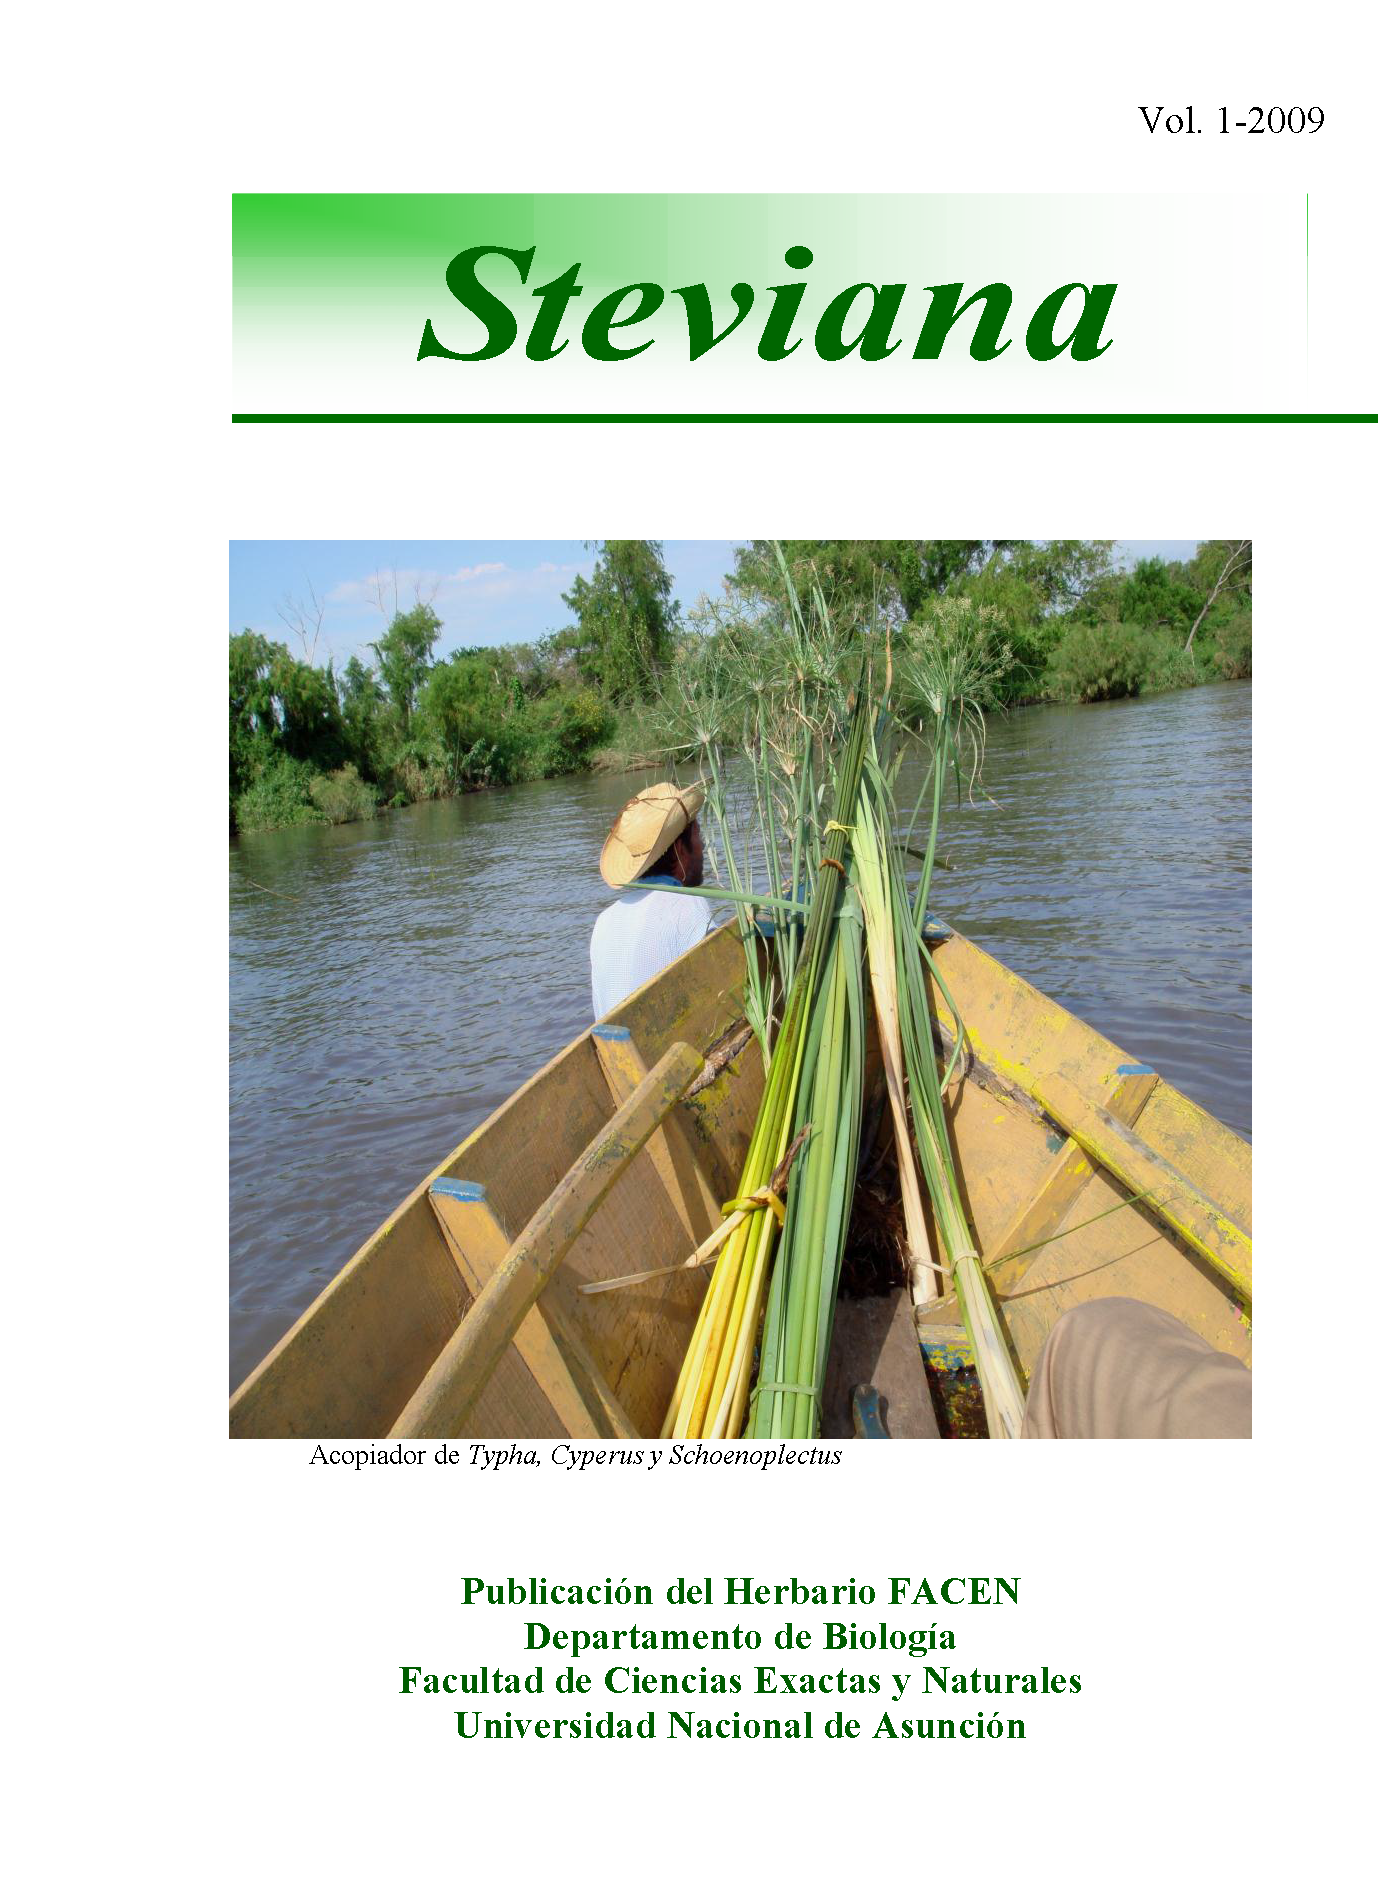 					Ver Vol. 1 (2009): Steviana
				